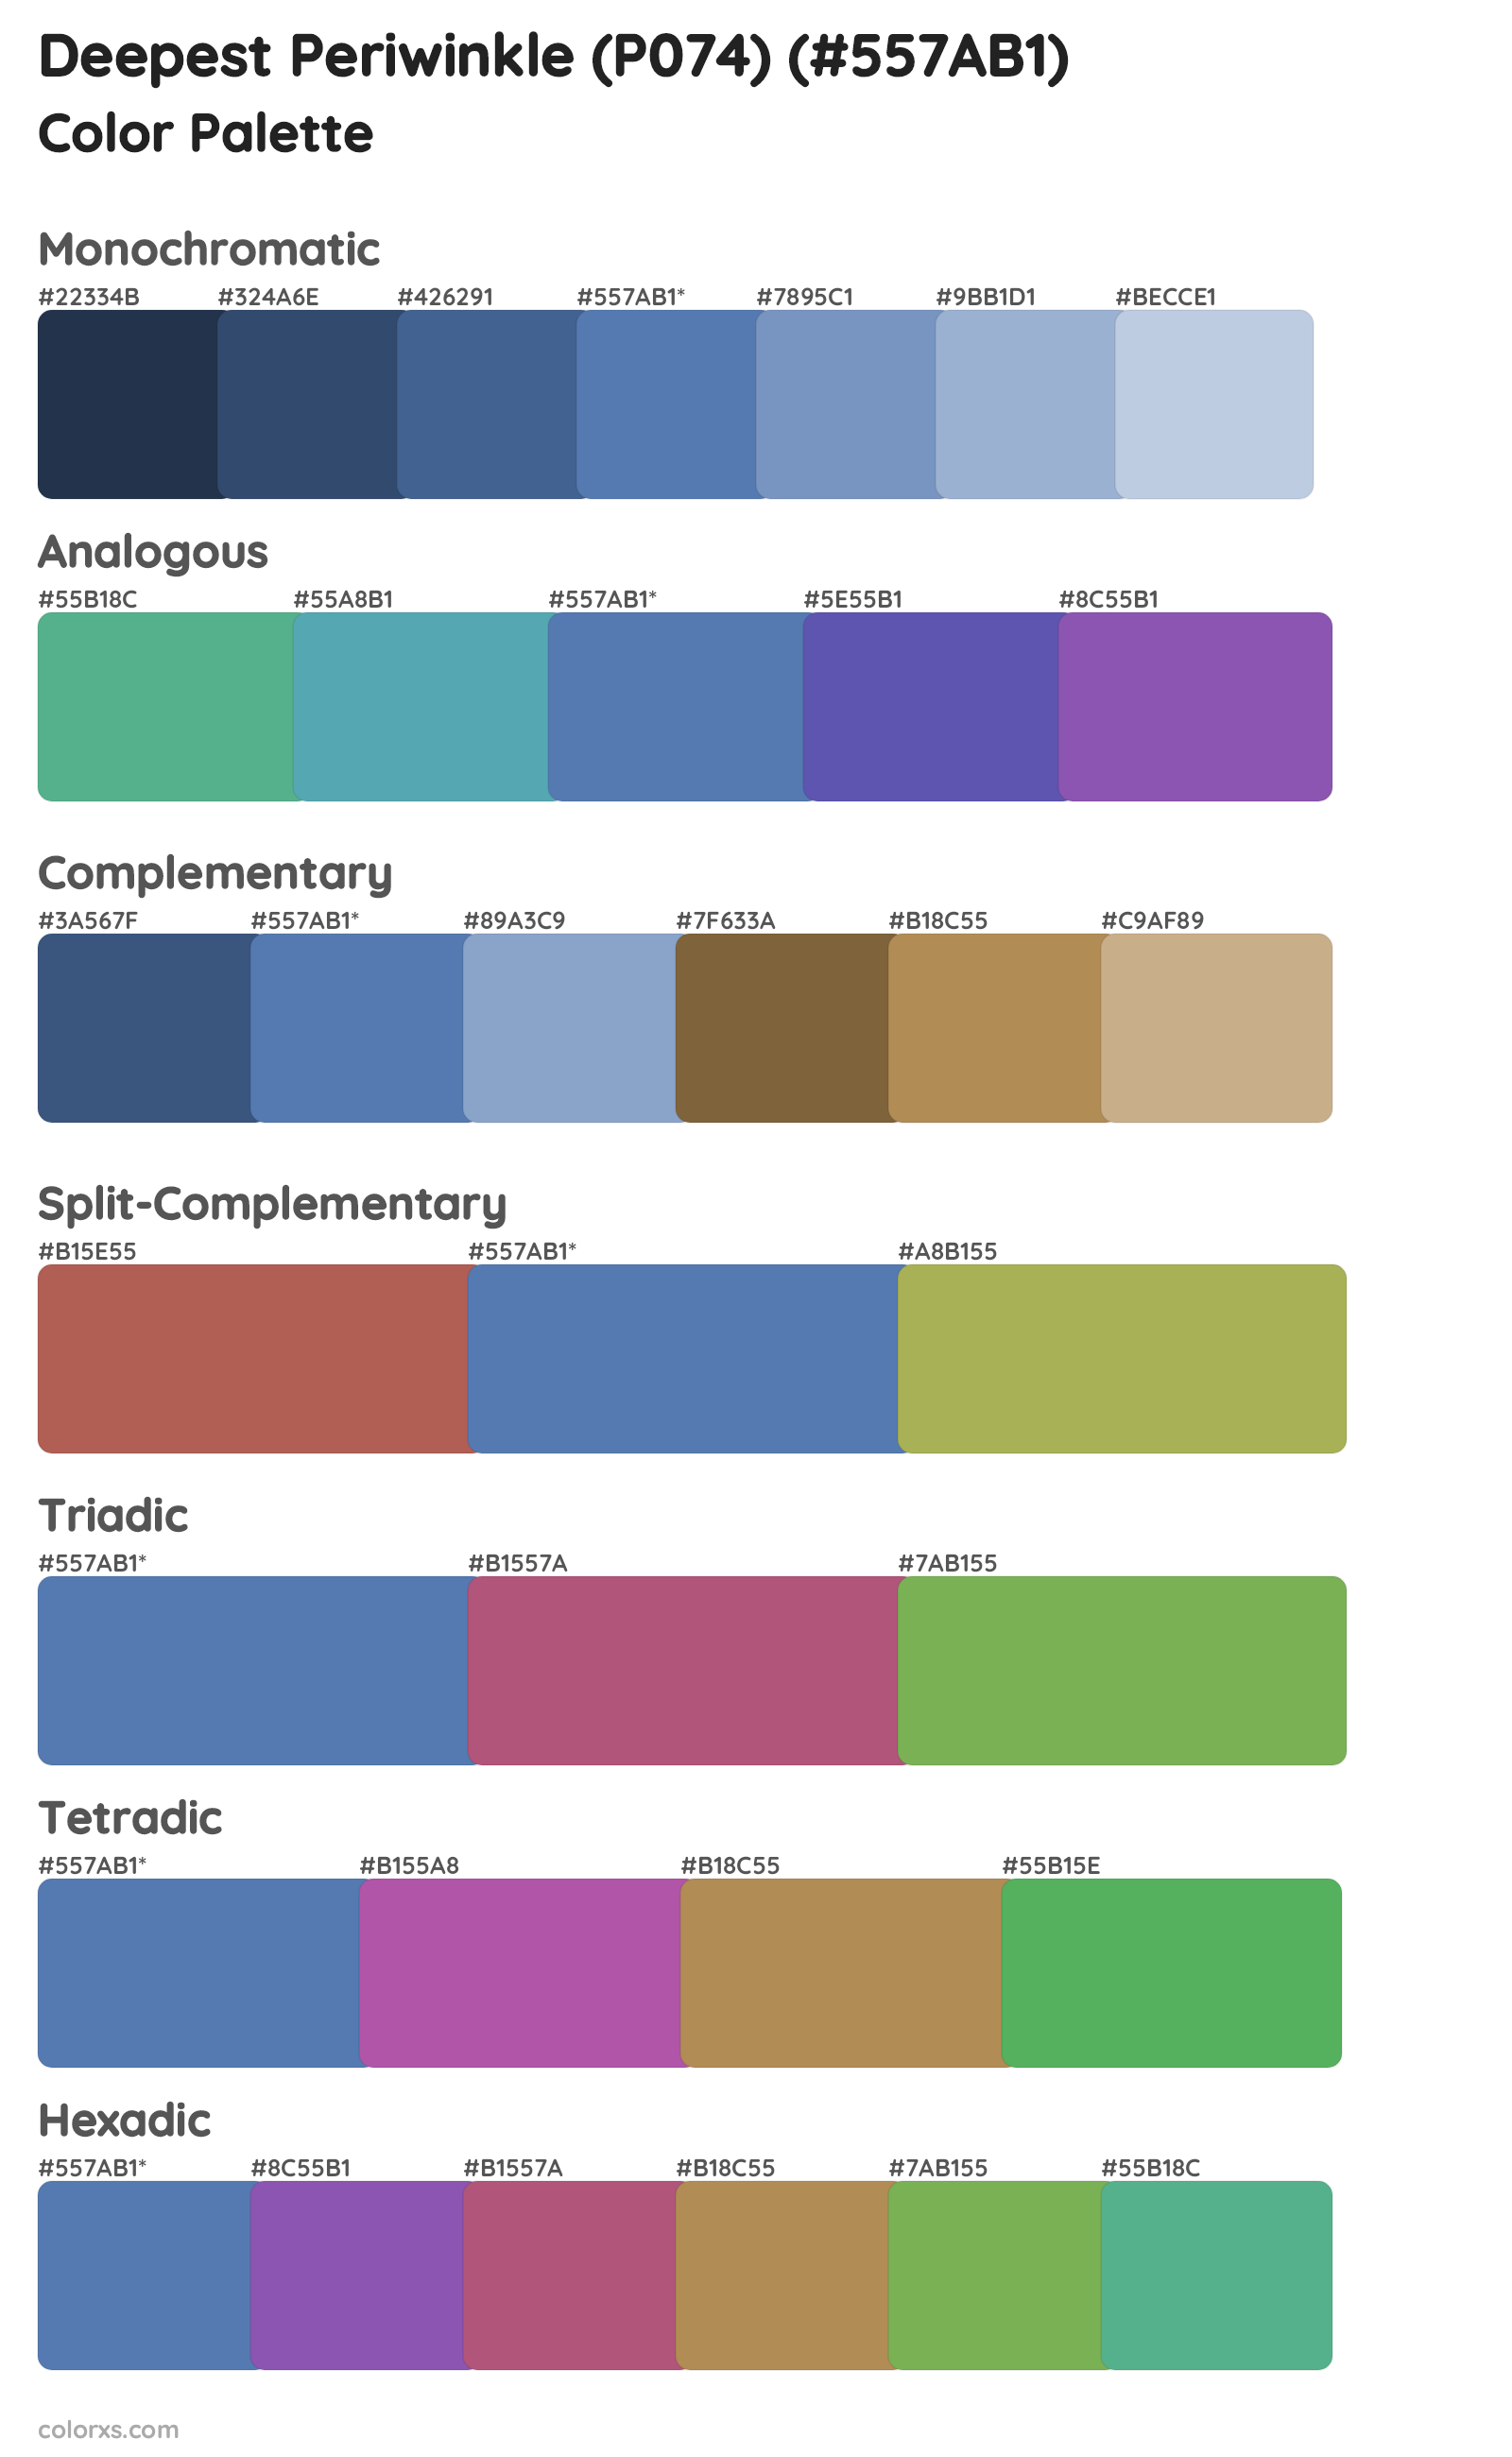 Deepest Periwinkle (P074) Color Scheme Palettes